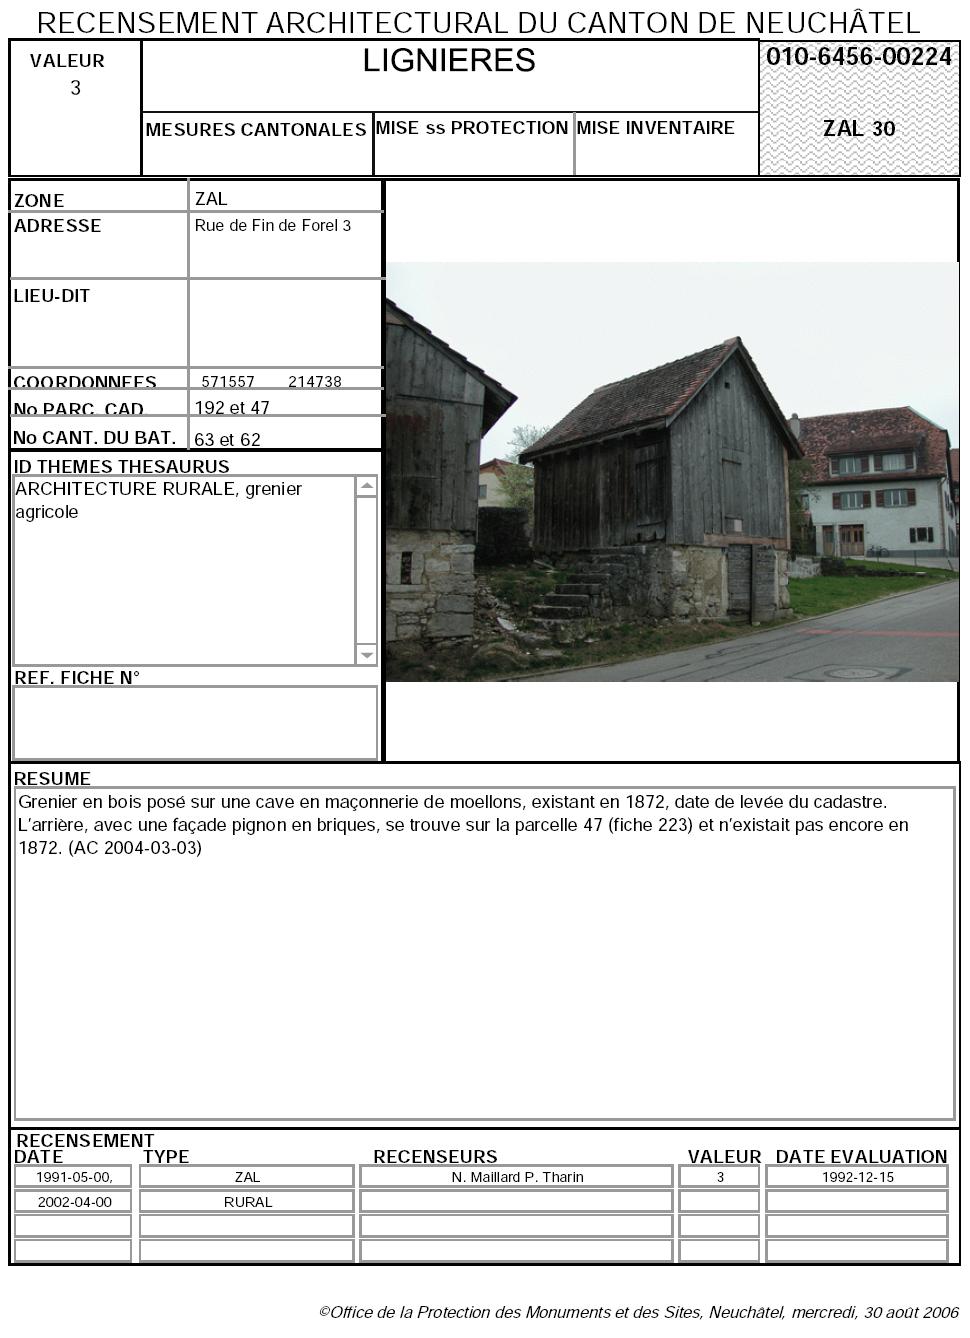 Recensement architectural du canton de Neuchâtel: Fiche 010-6456-00224